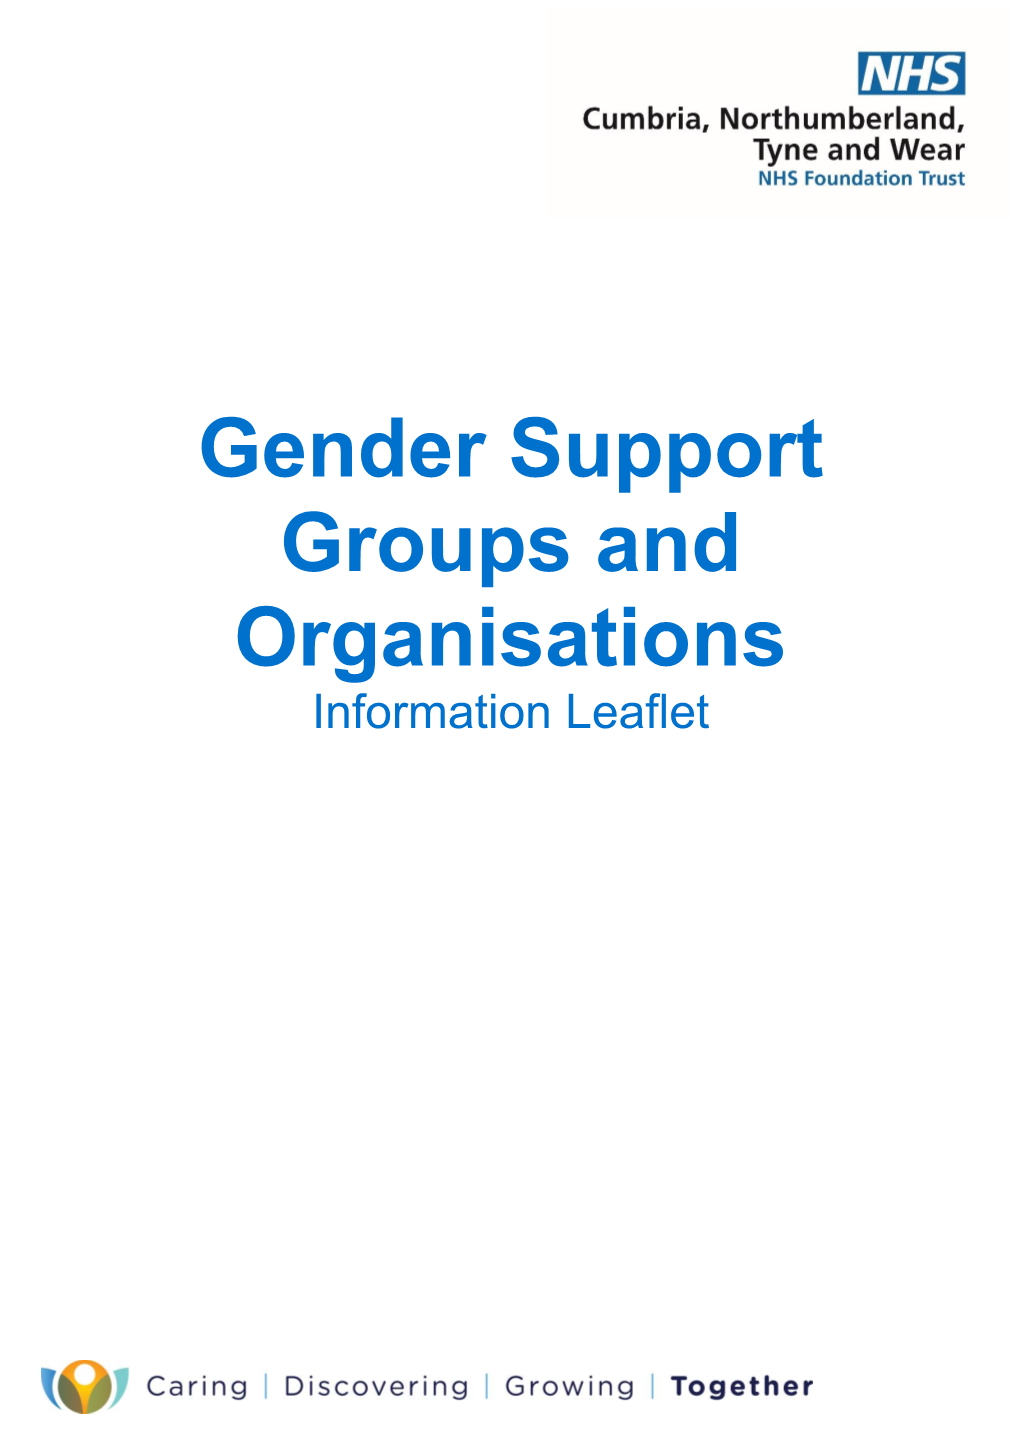 Gender Support Groups and Organisations Information Leaflet